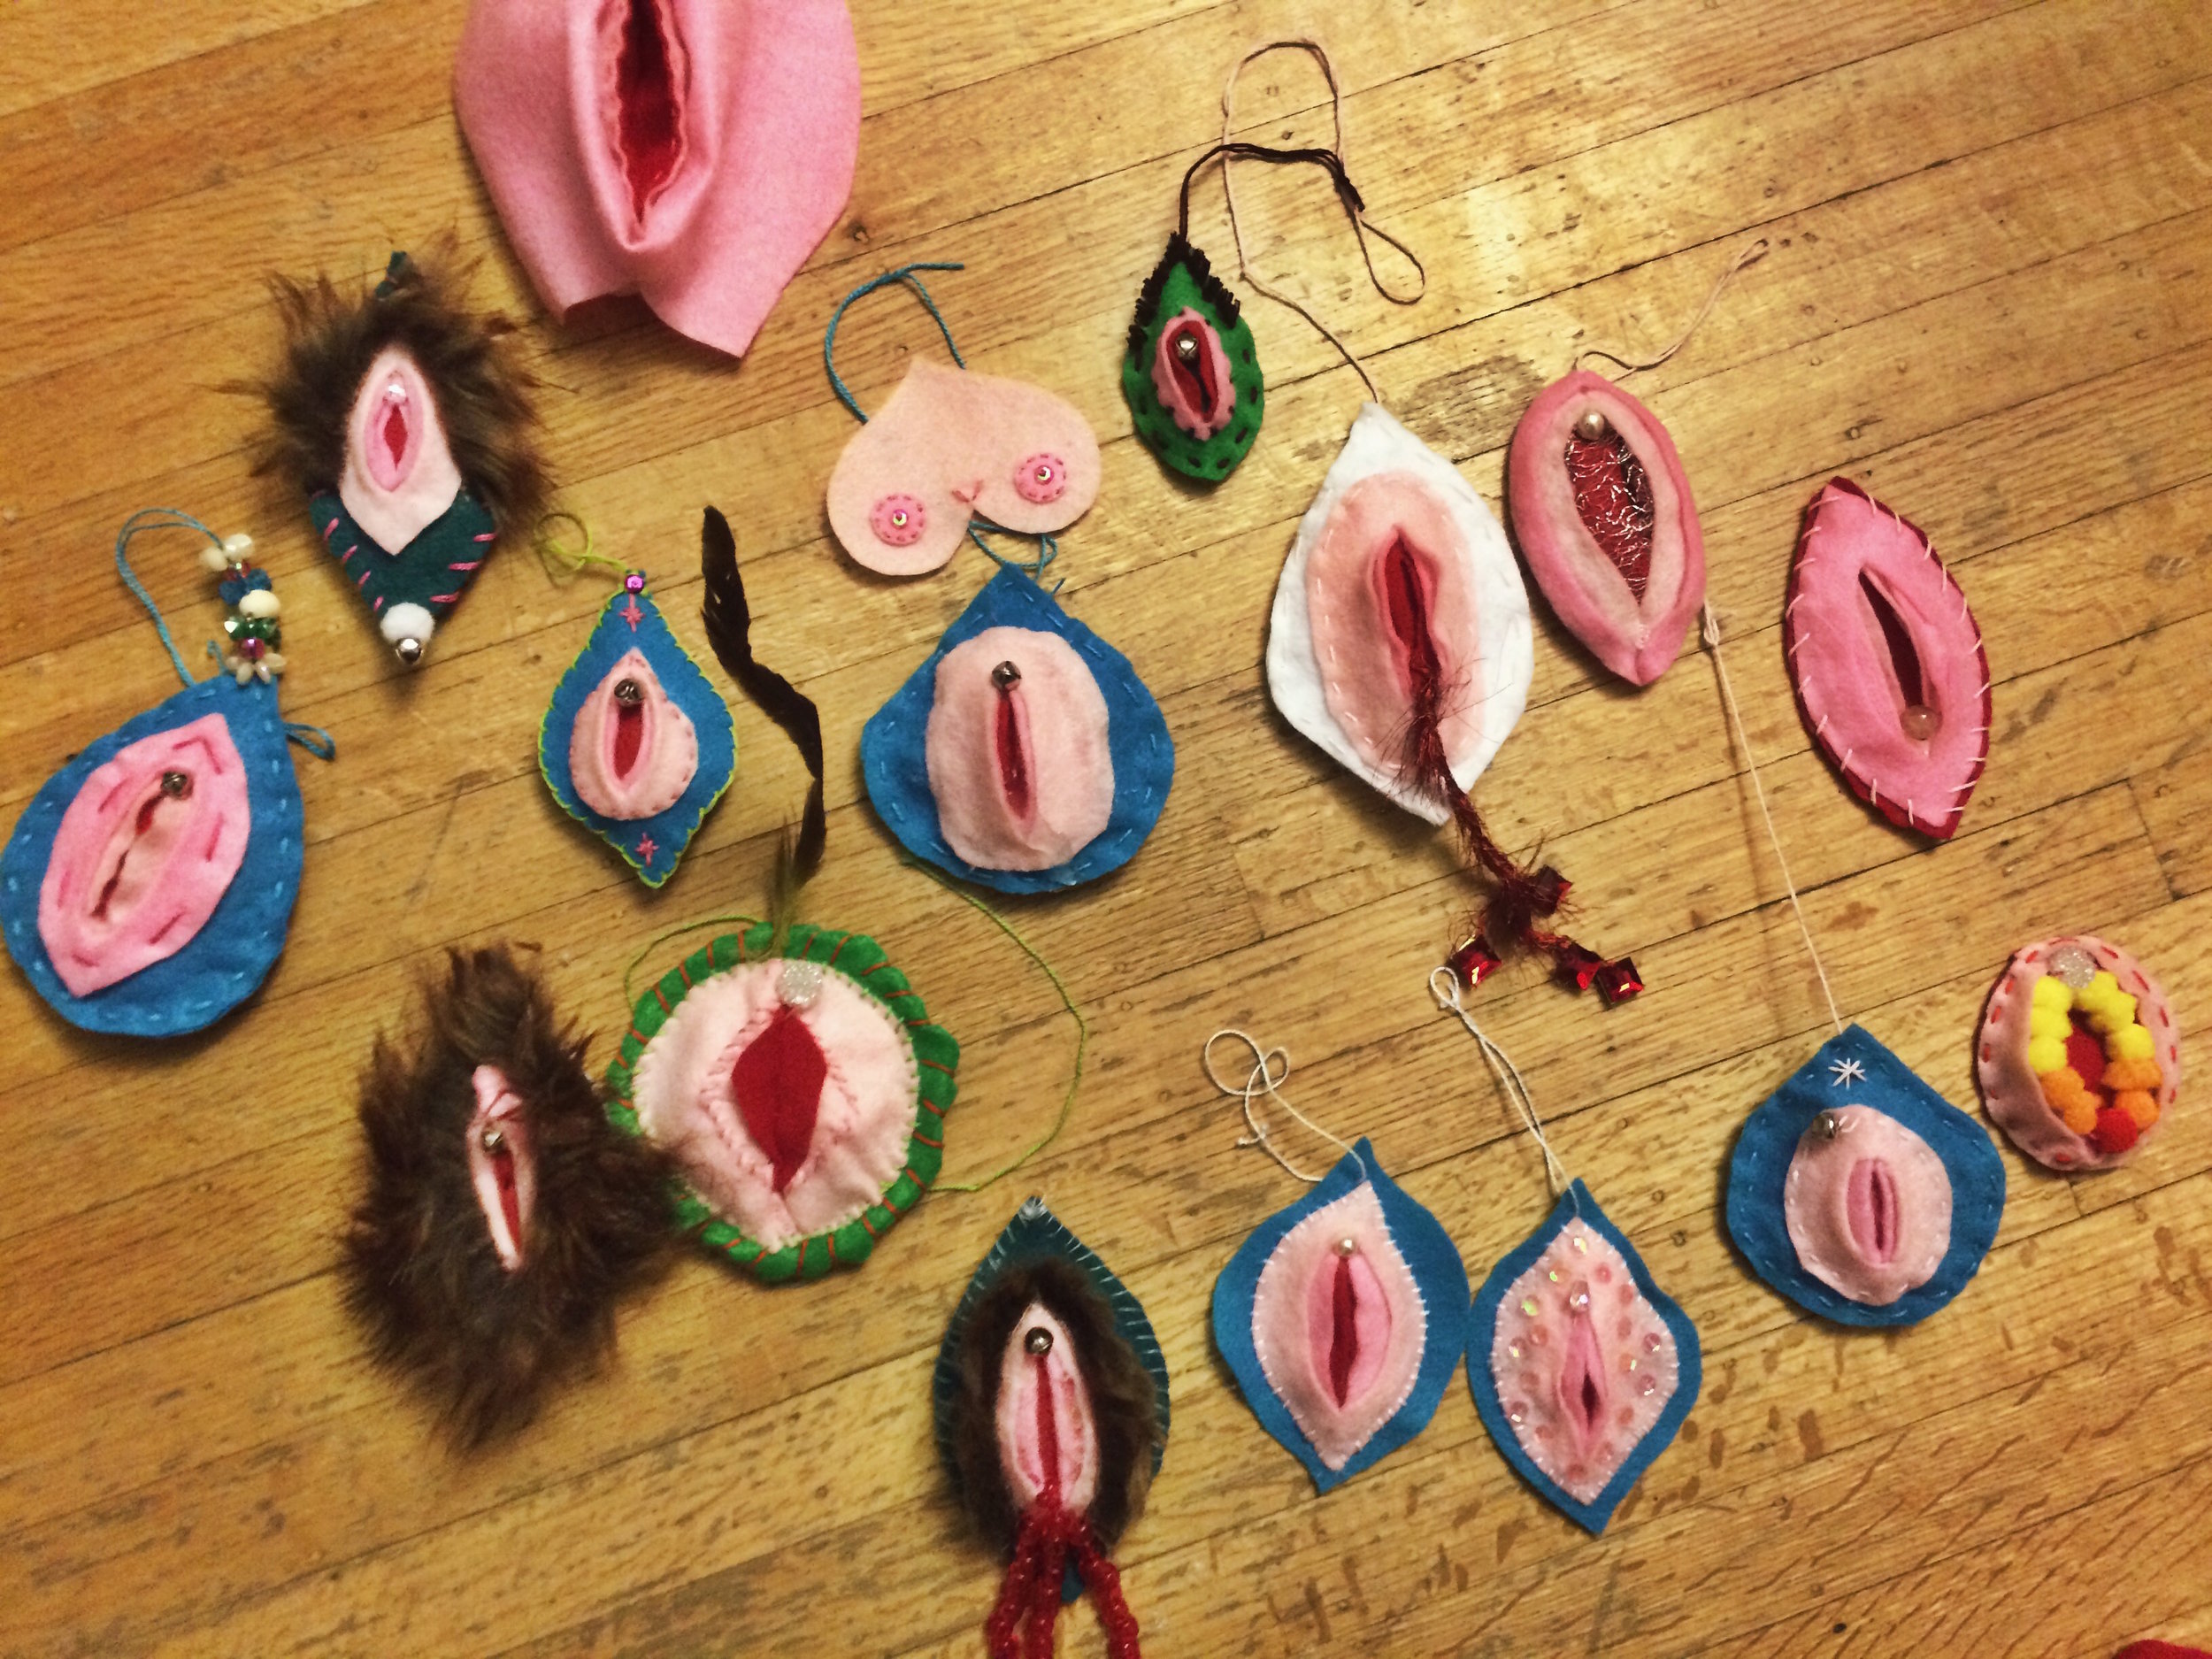 How To Make Fake Vagina